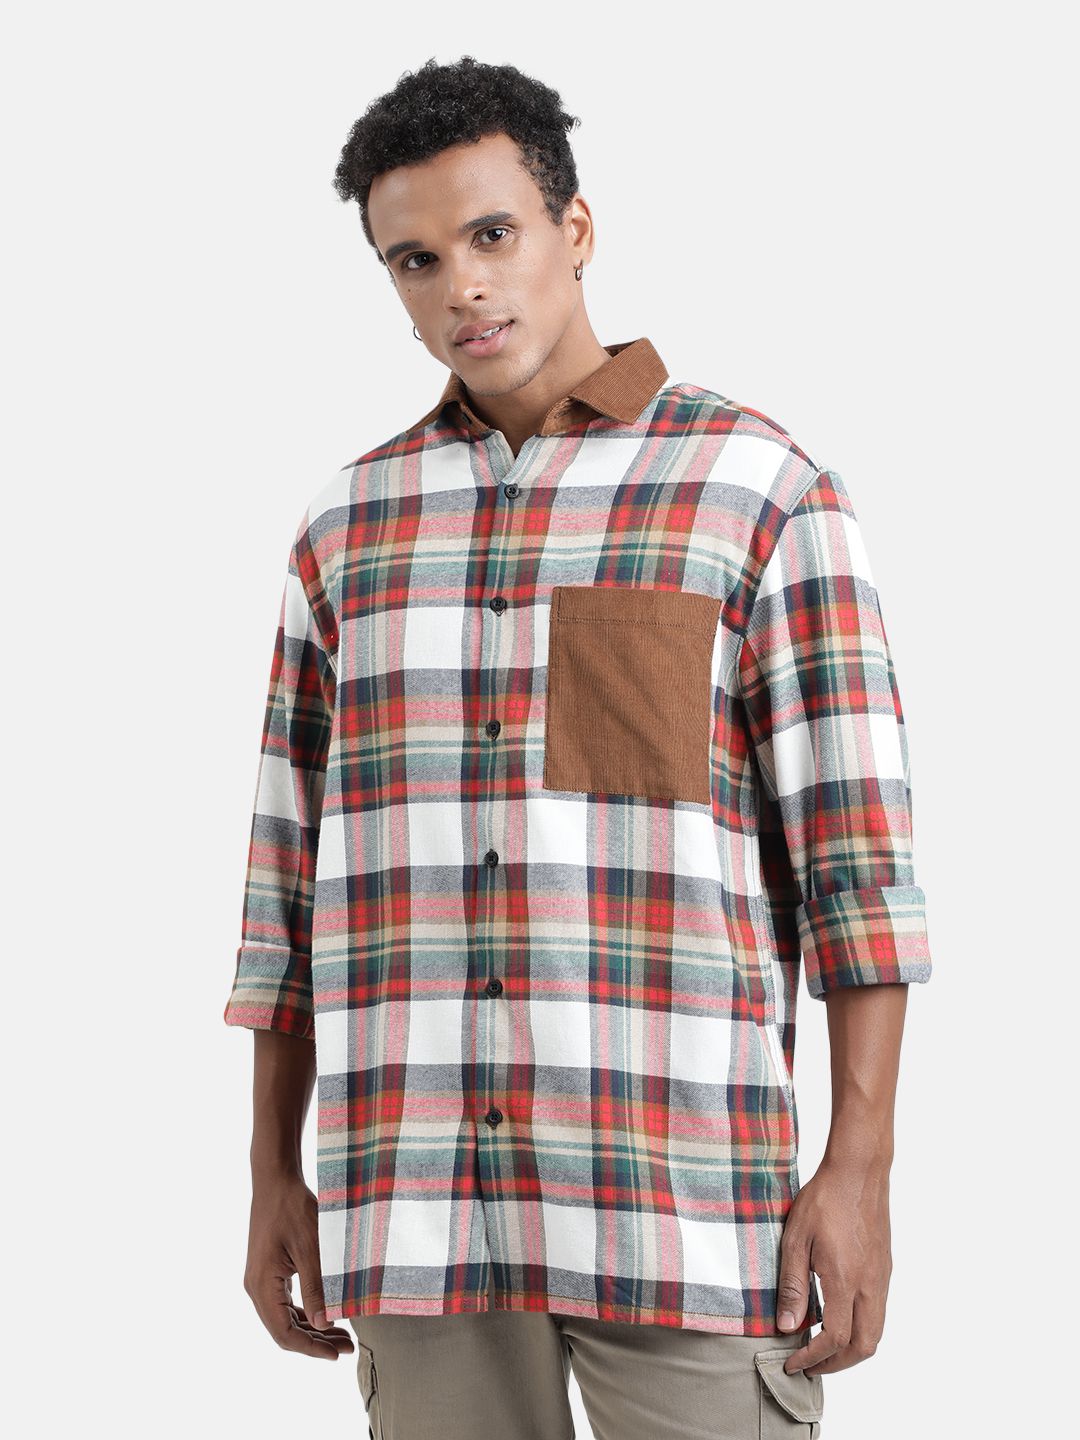     			Bene Kleed 100% Cotton Regular Fit Checks Full Sleeves Men's Casual Shirt - Multi ( Pack of 1 )